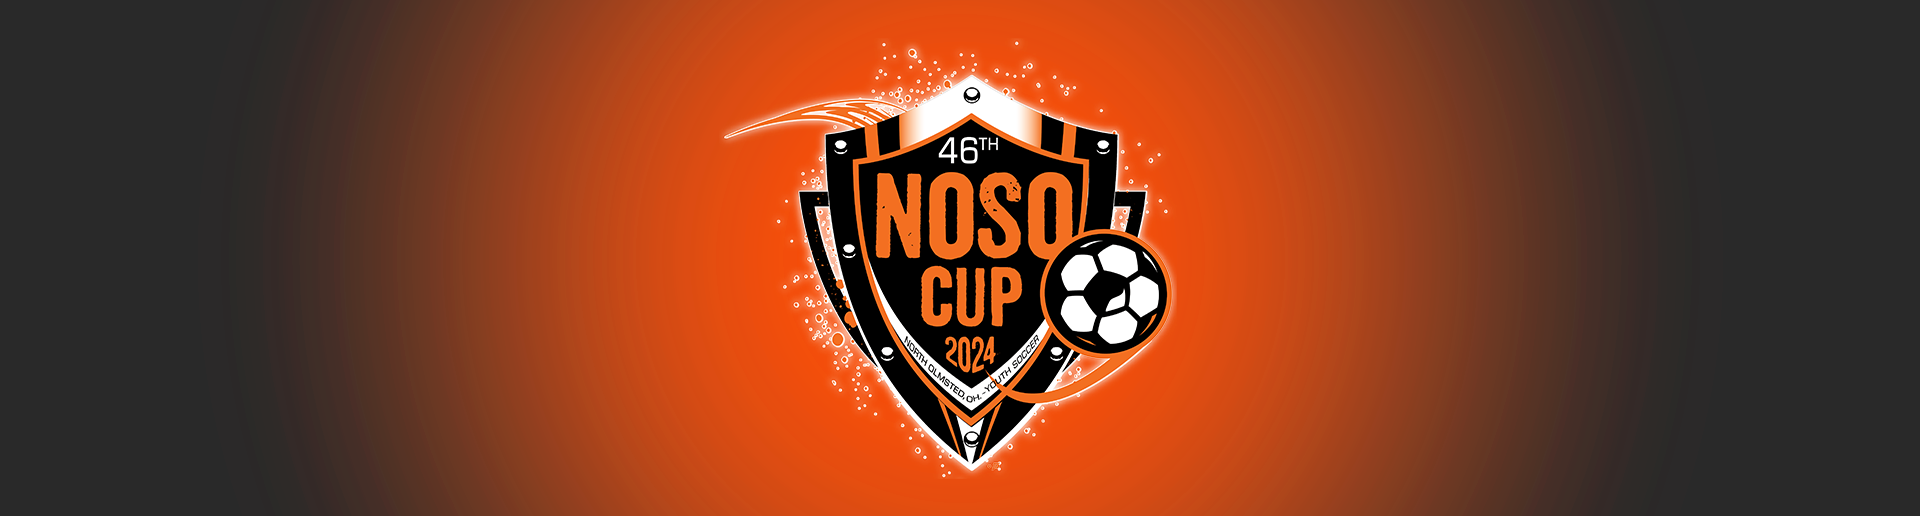 NOSO Cup / June 14-16